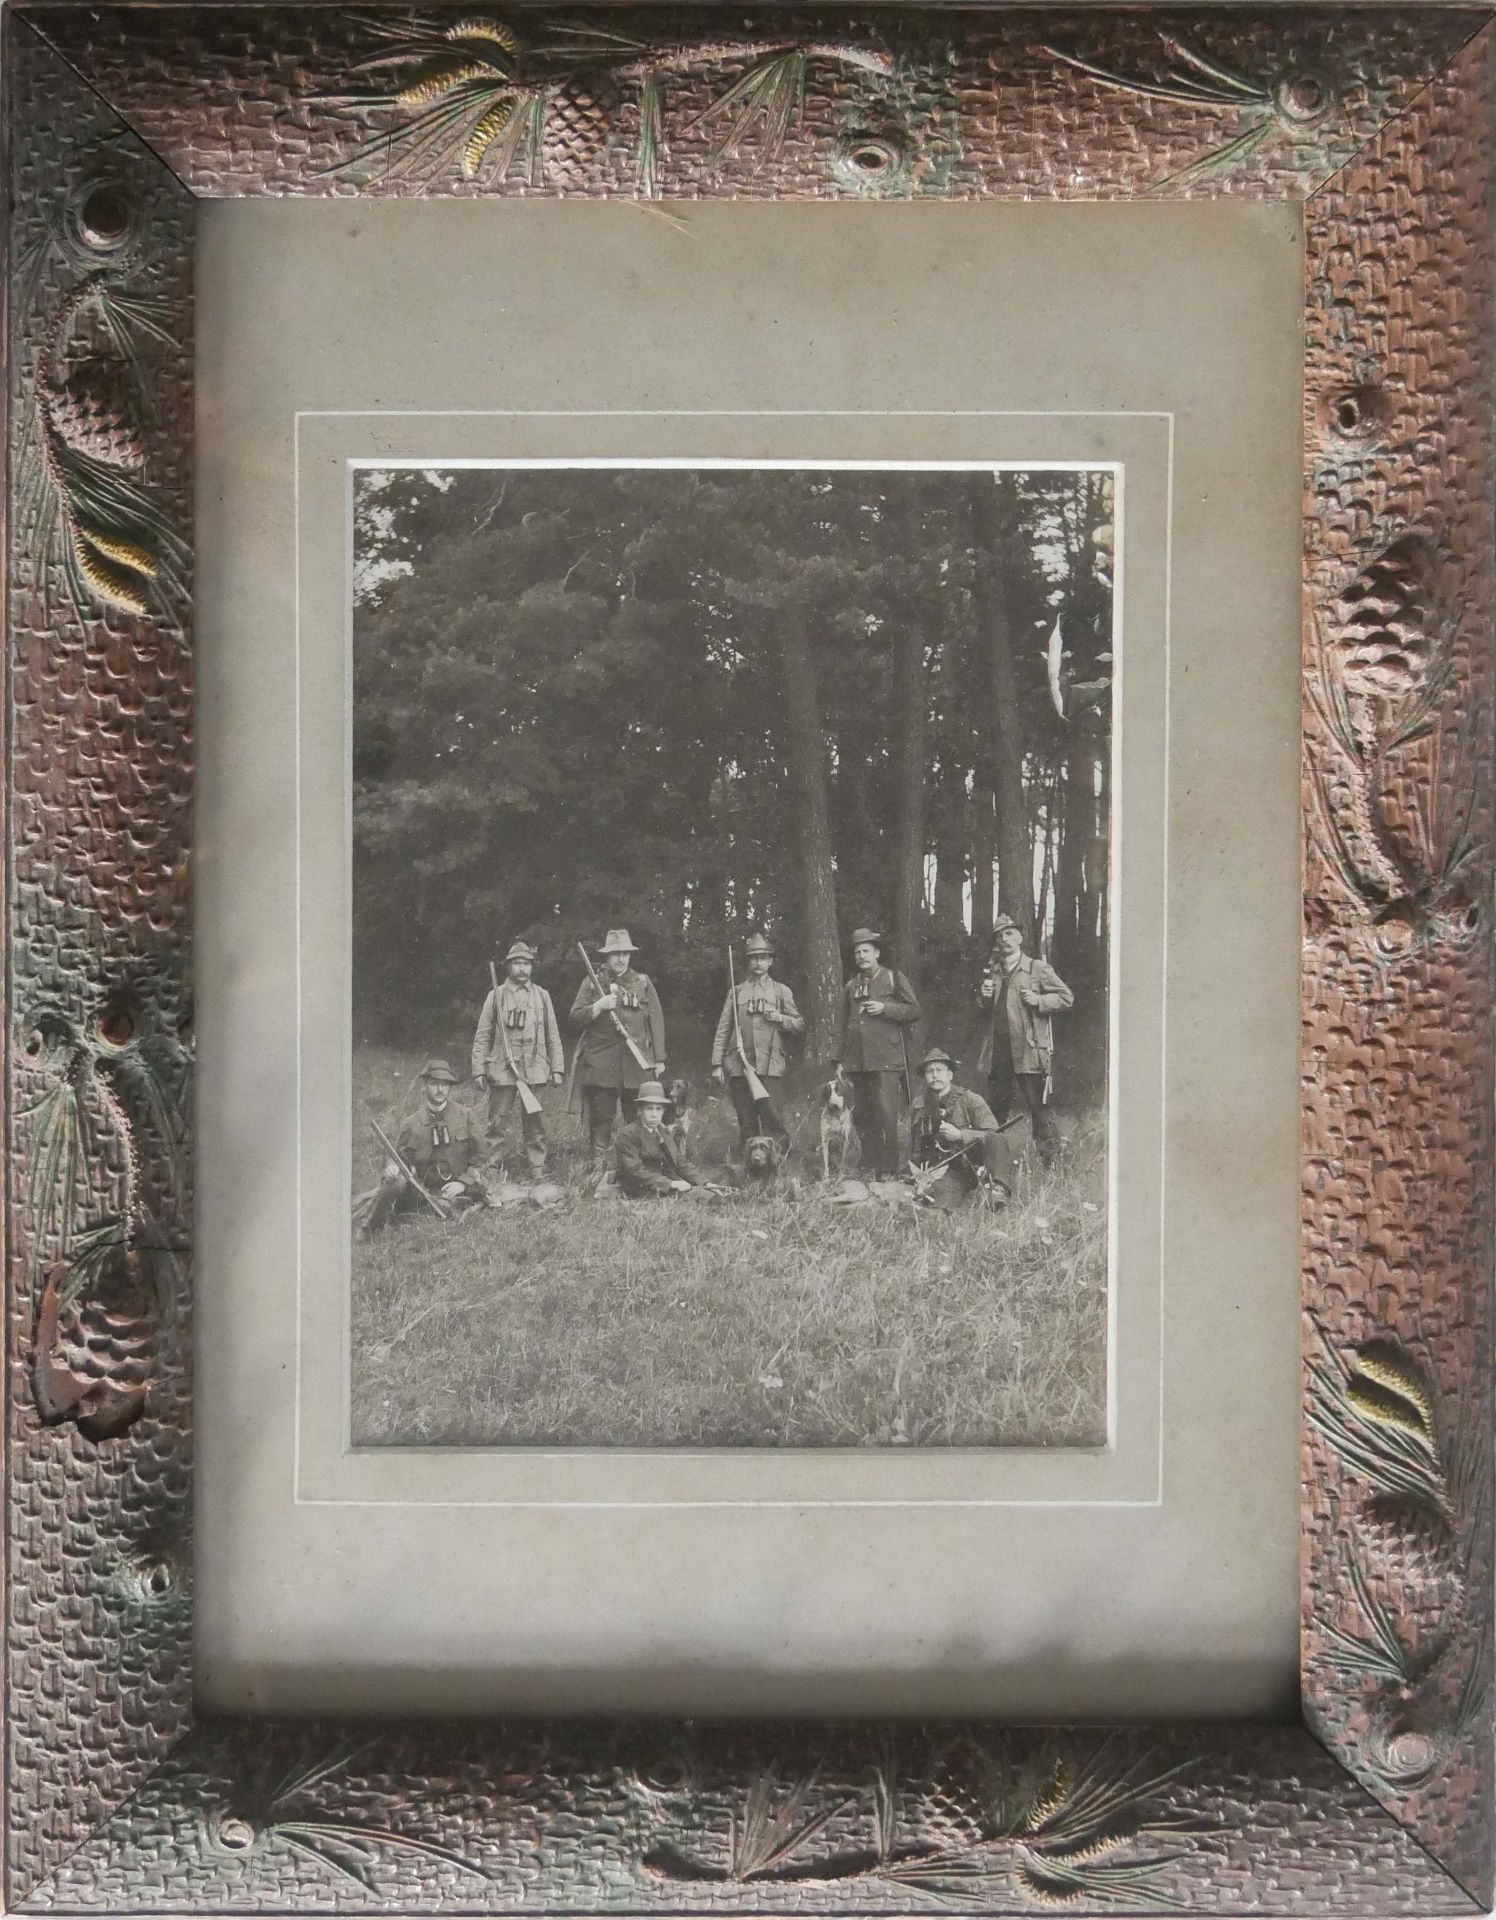 Foto "Jäger auf der Jagd" im ausgefallenen Rahmen. Maße: Höhe ca. 42,5 cm, Breite ca. 33 cm.